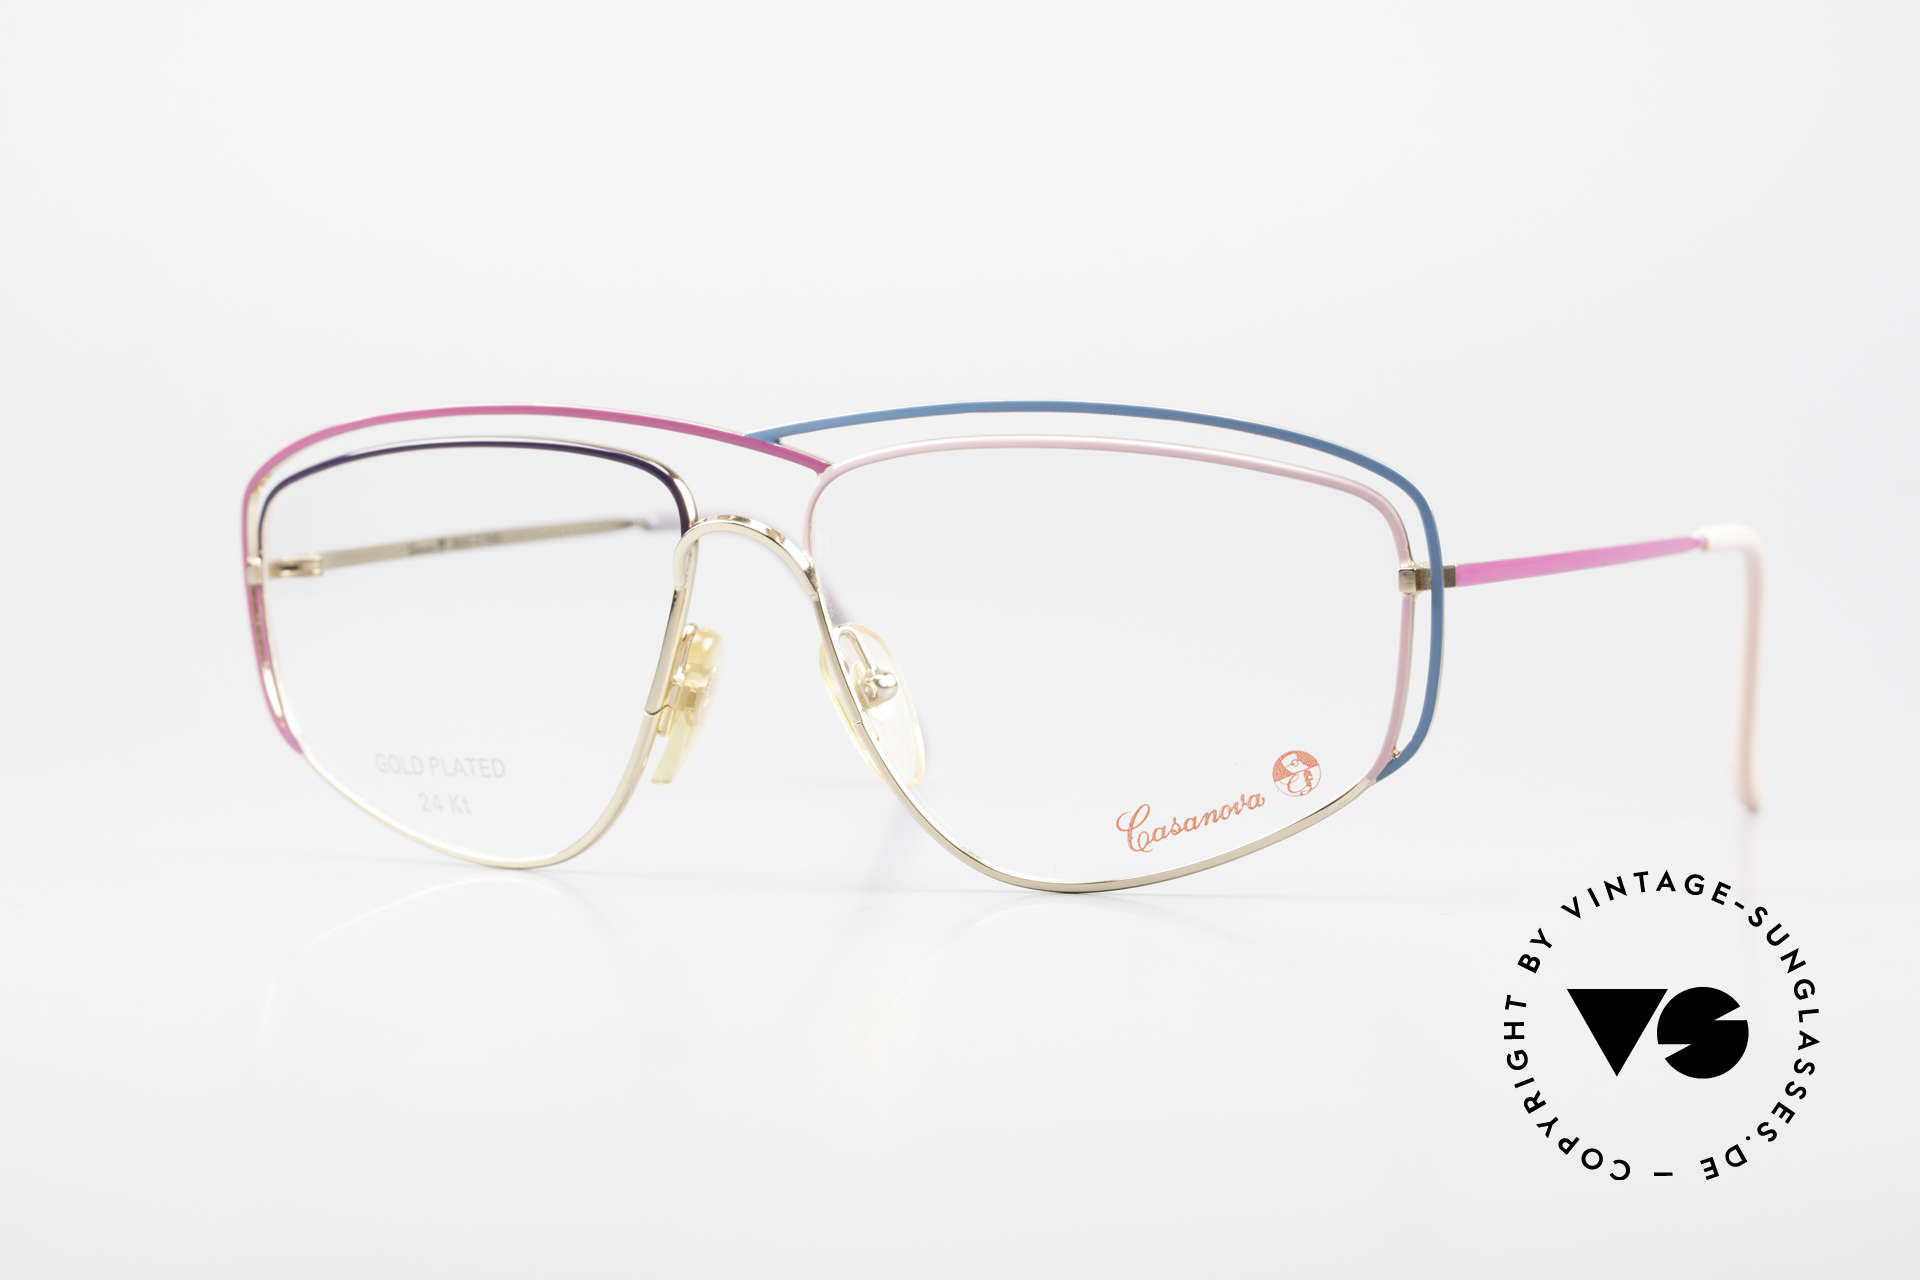 Casanova CN24 24kt Vergoldete Damen Brille, zauberhafte CASANOVA Designerbrille von circa 1985, Passend für Damen